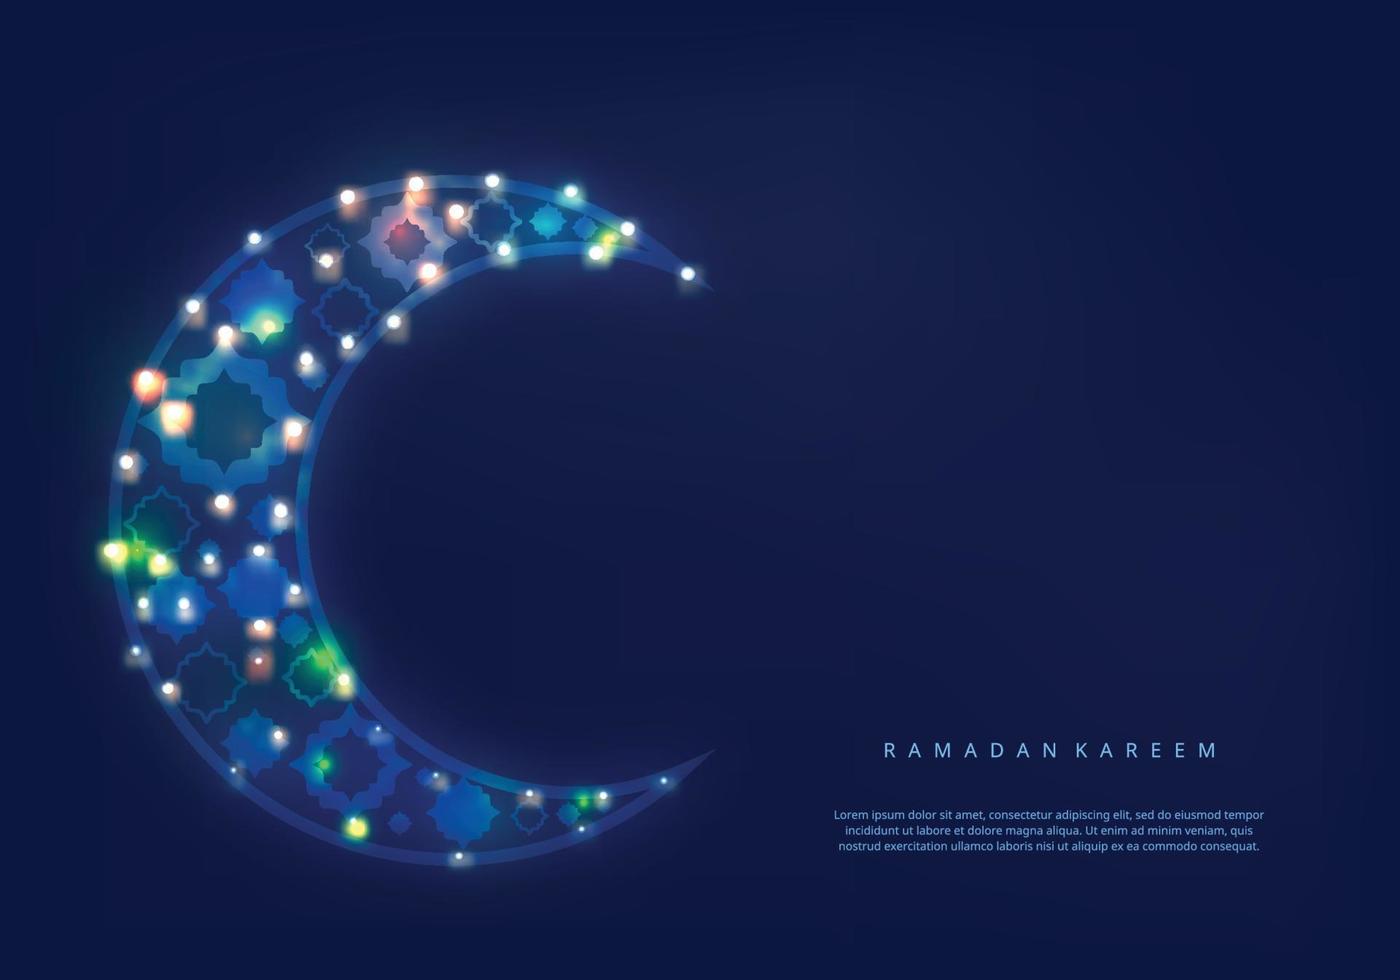 fondo de ramadan kareem con luna decorativa islámica e islámico vector